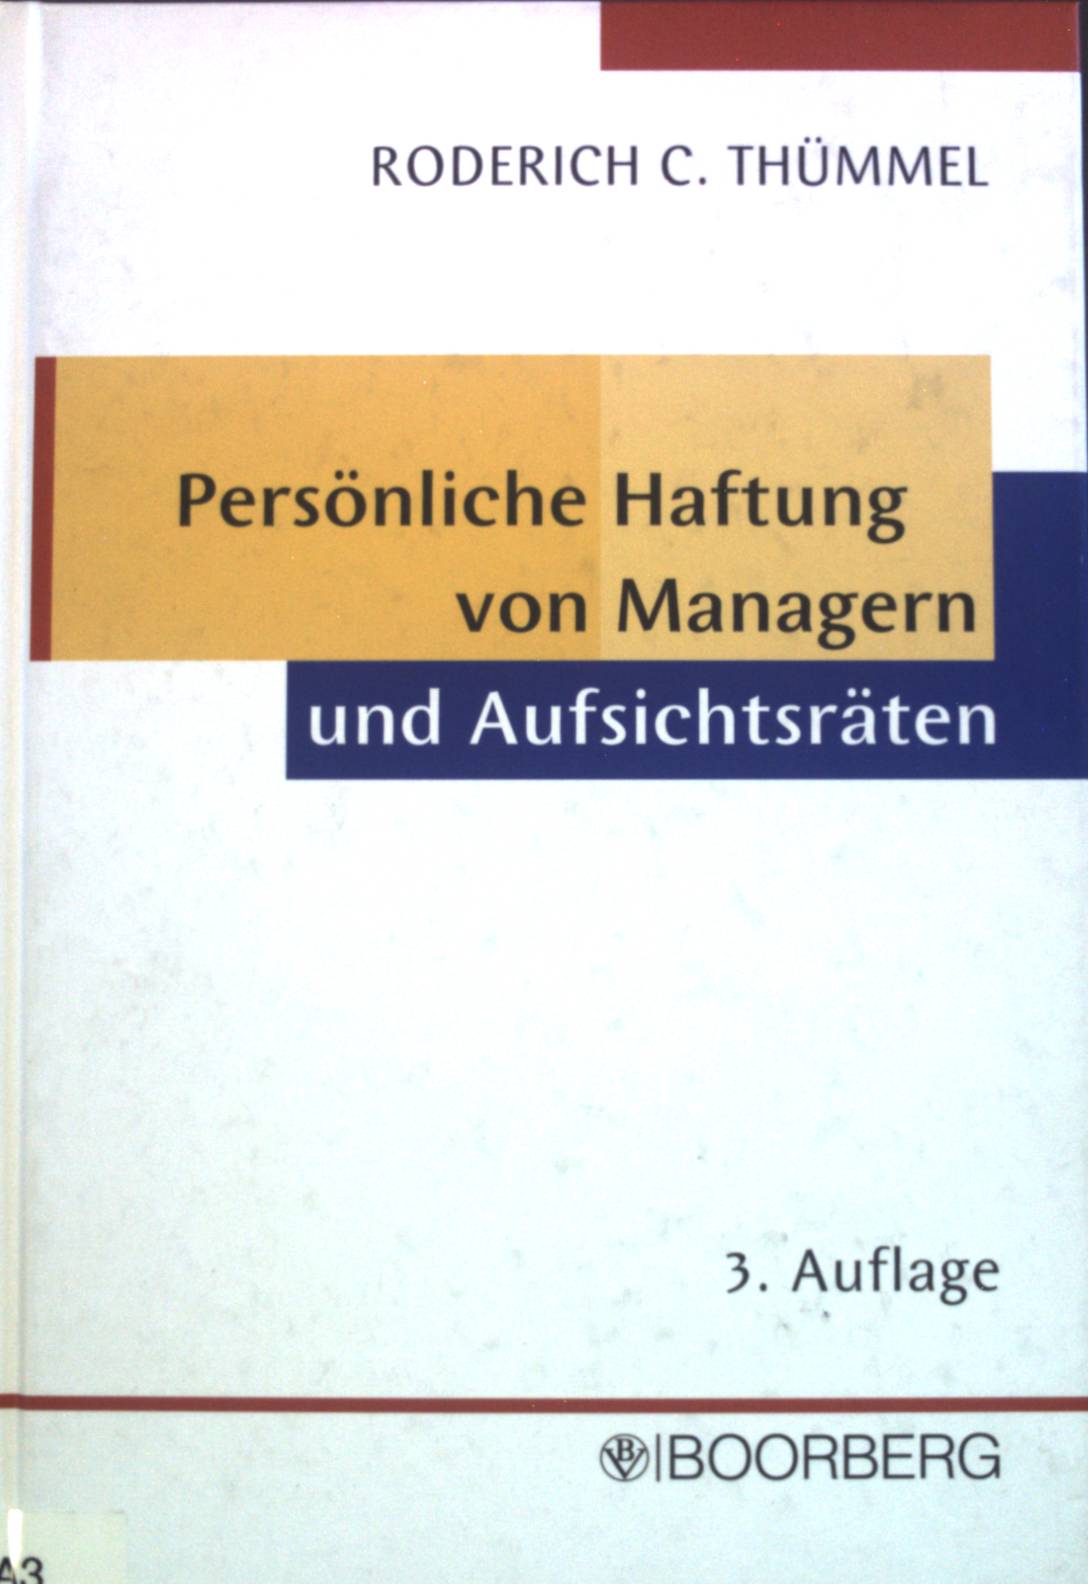 Persönliche Haftung von Managern und Aufsichtsräten : Haftungsrisiken bei Managementfehlern, Risikobegrenzung und D-&-O-Versicherung. - Thümmel, Roderich C.